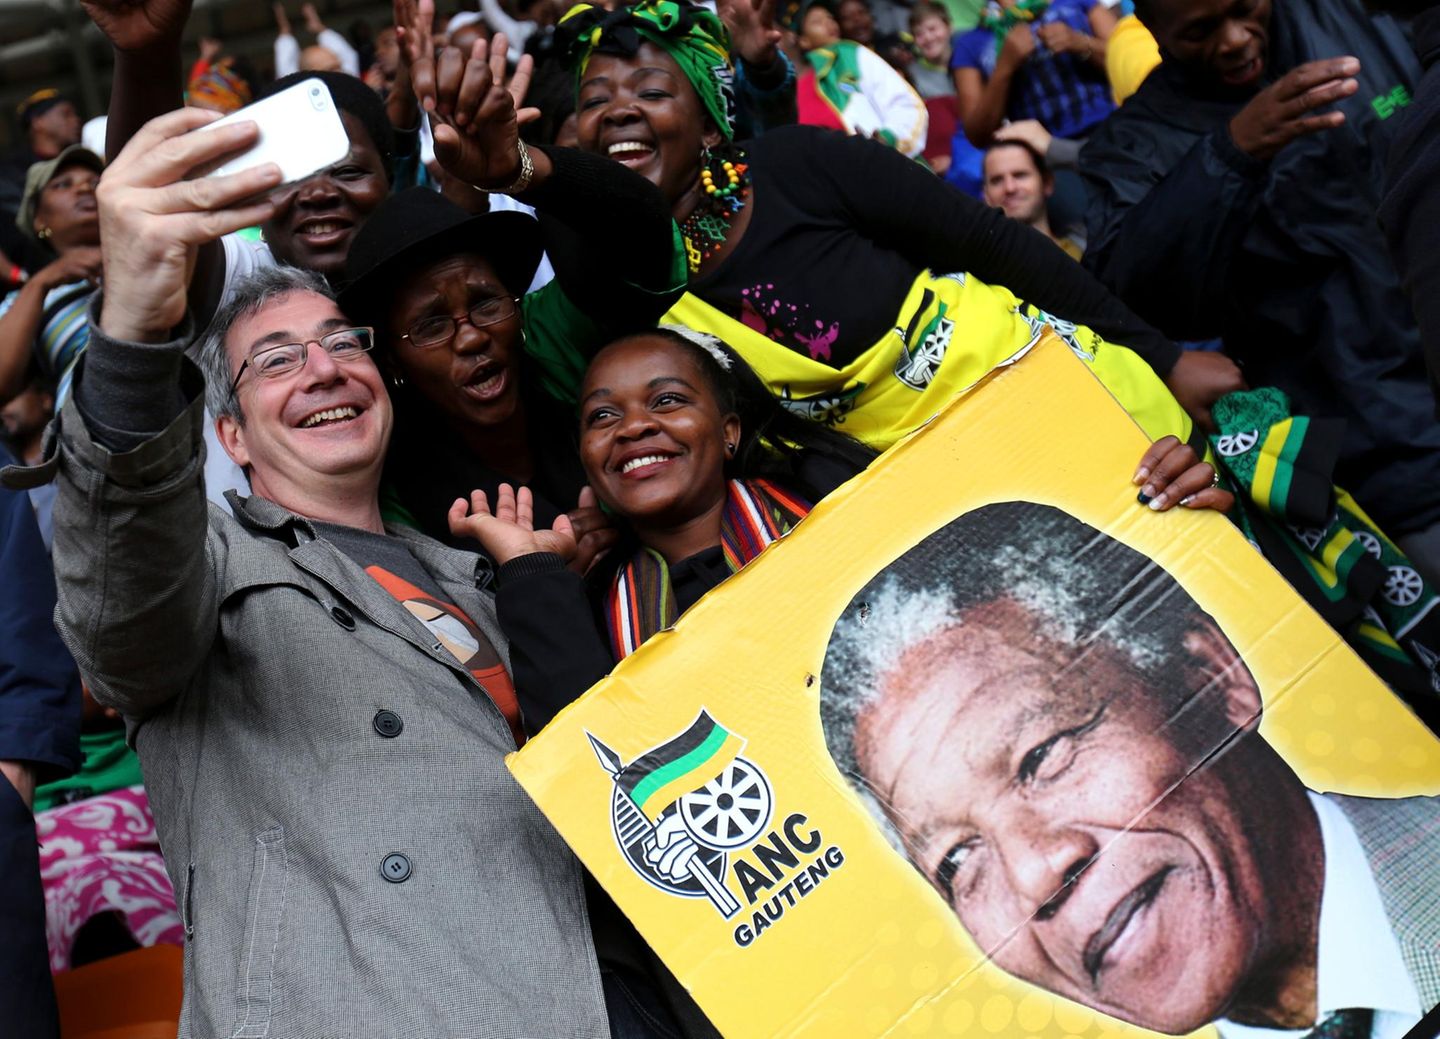 Trotz des traurigen Anlasses feiern die Mandela-Anhänger ausgelassen.